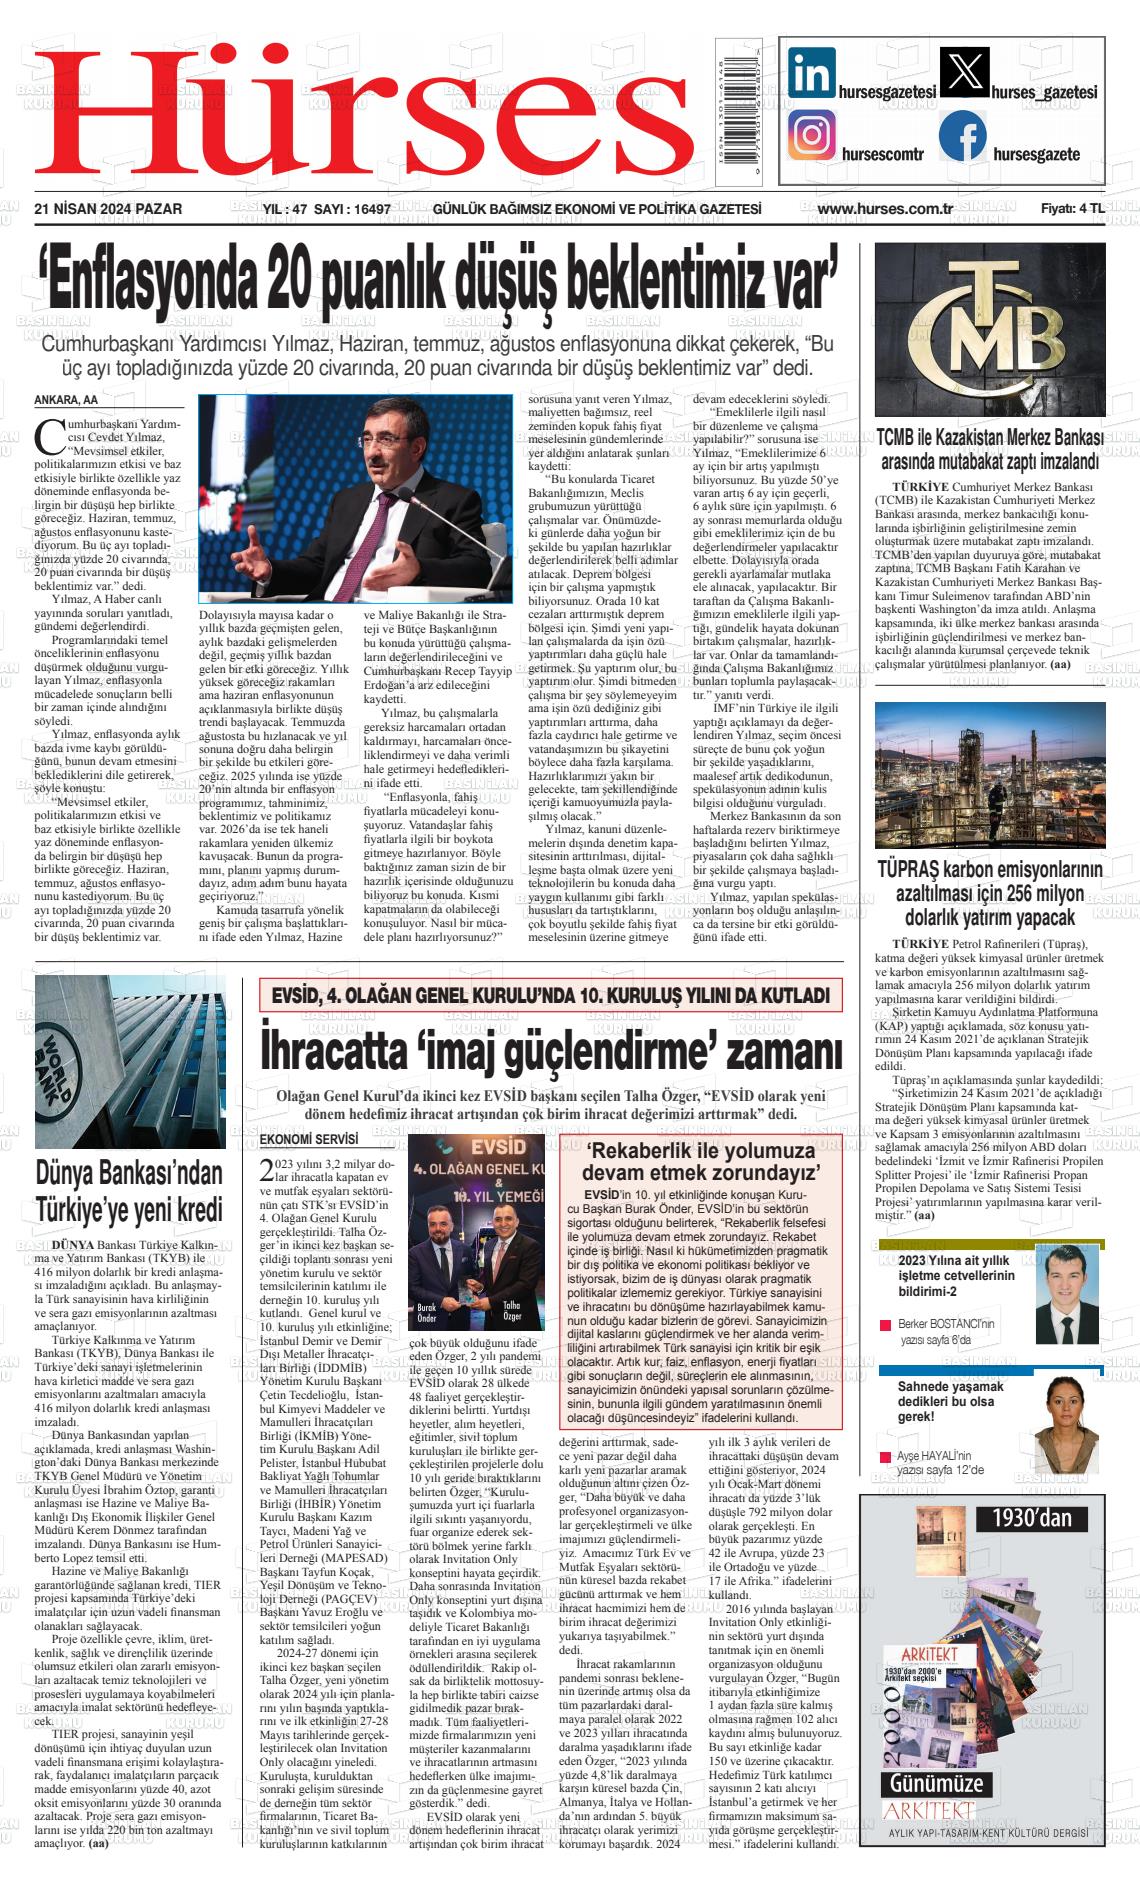 24 Nisan 2024 İstanbul Hürses gazetesi Gazete Manşeti